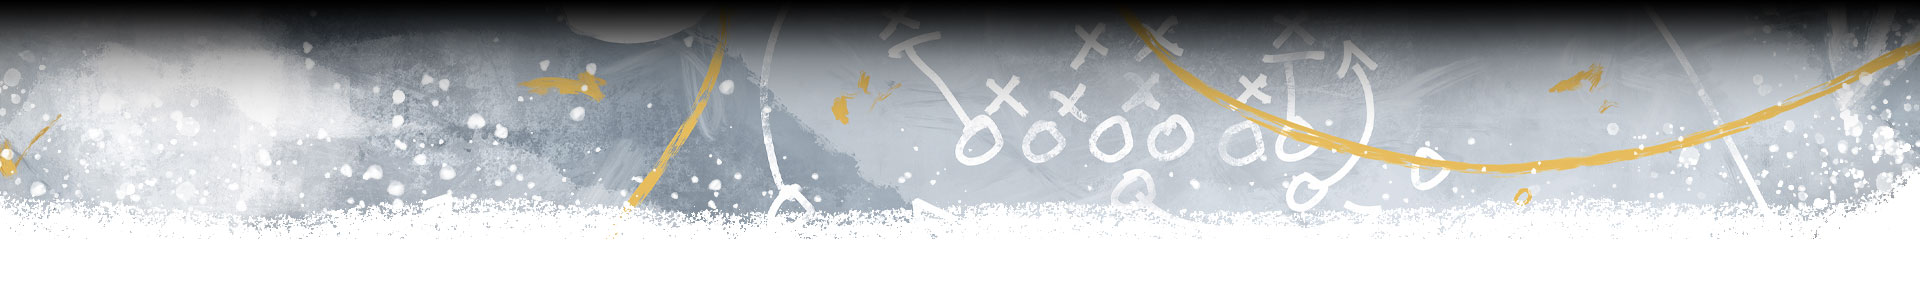 Una imagen decorativa de dibujos de estrategia de fútbol americano.